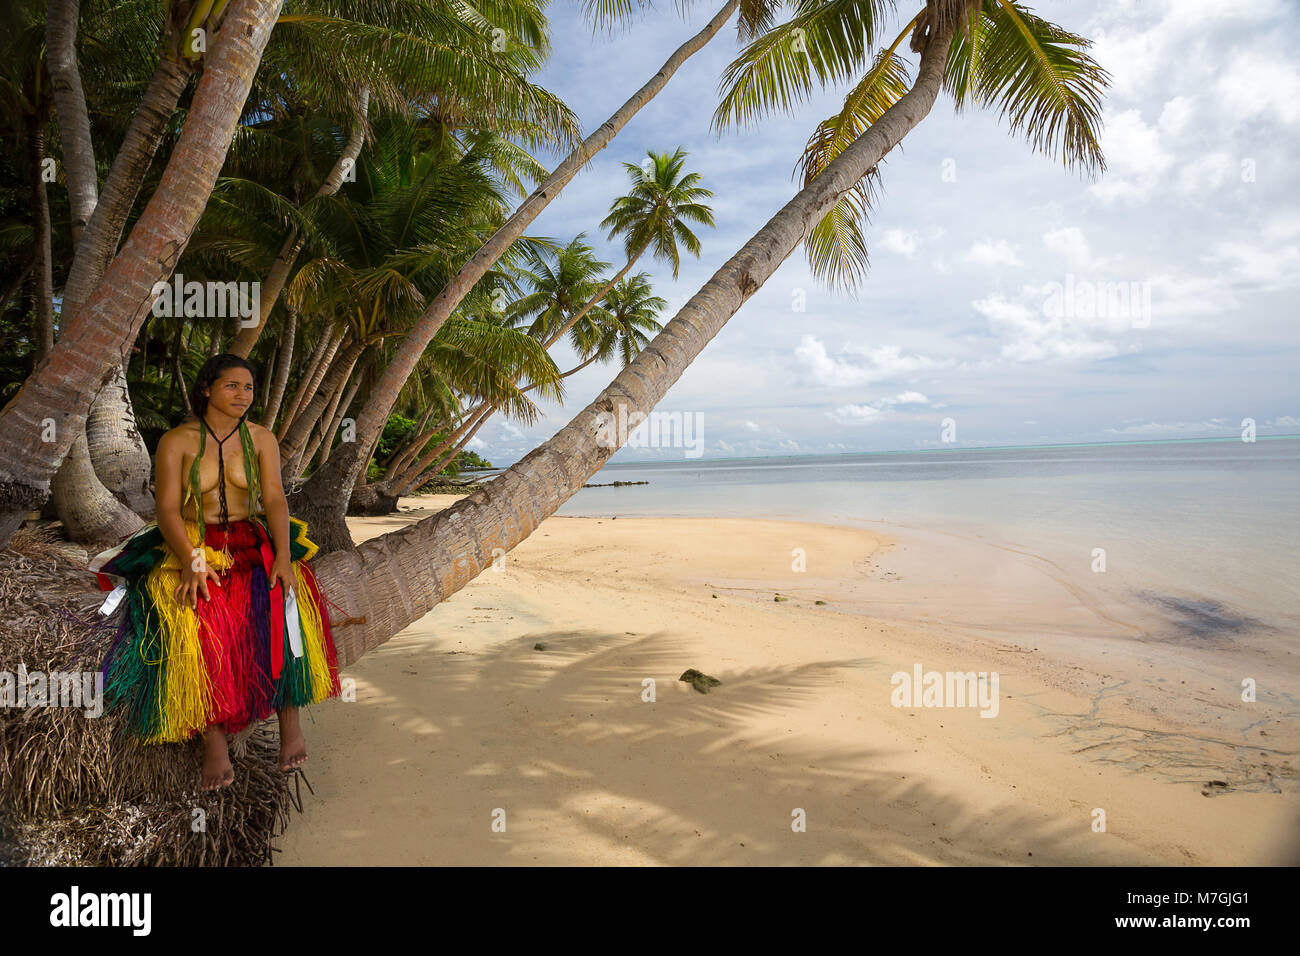 Cette jeune fille (MR) est dans une tenue traditionnelle pour les cérémonies culturelles sur l'île de Yap, Micronésie. Banque D'Images